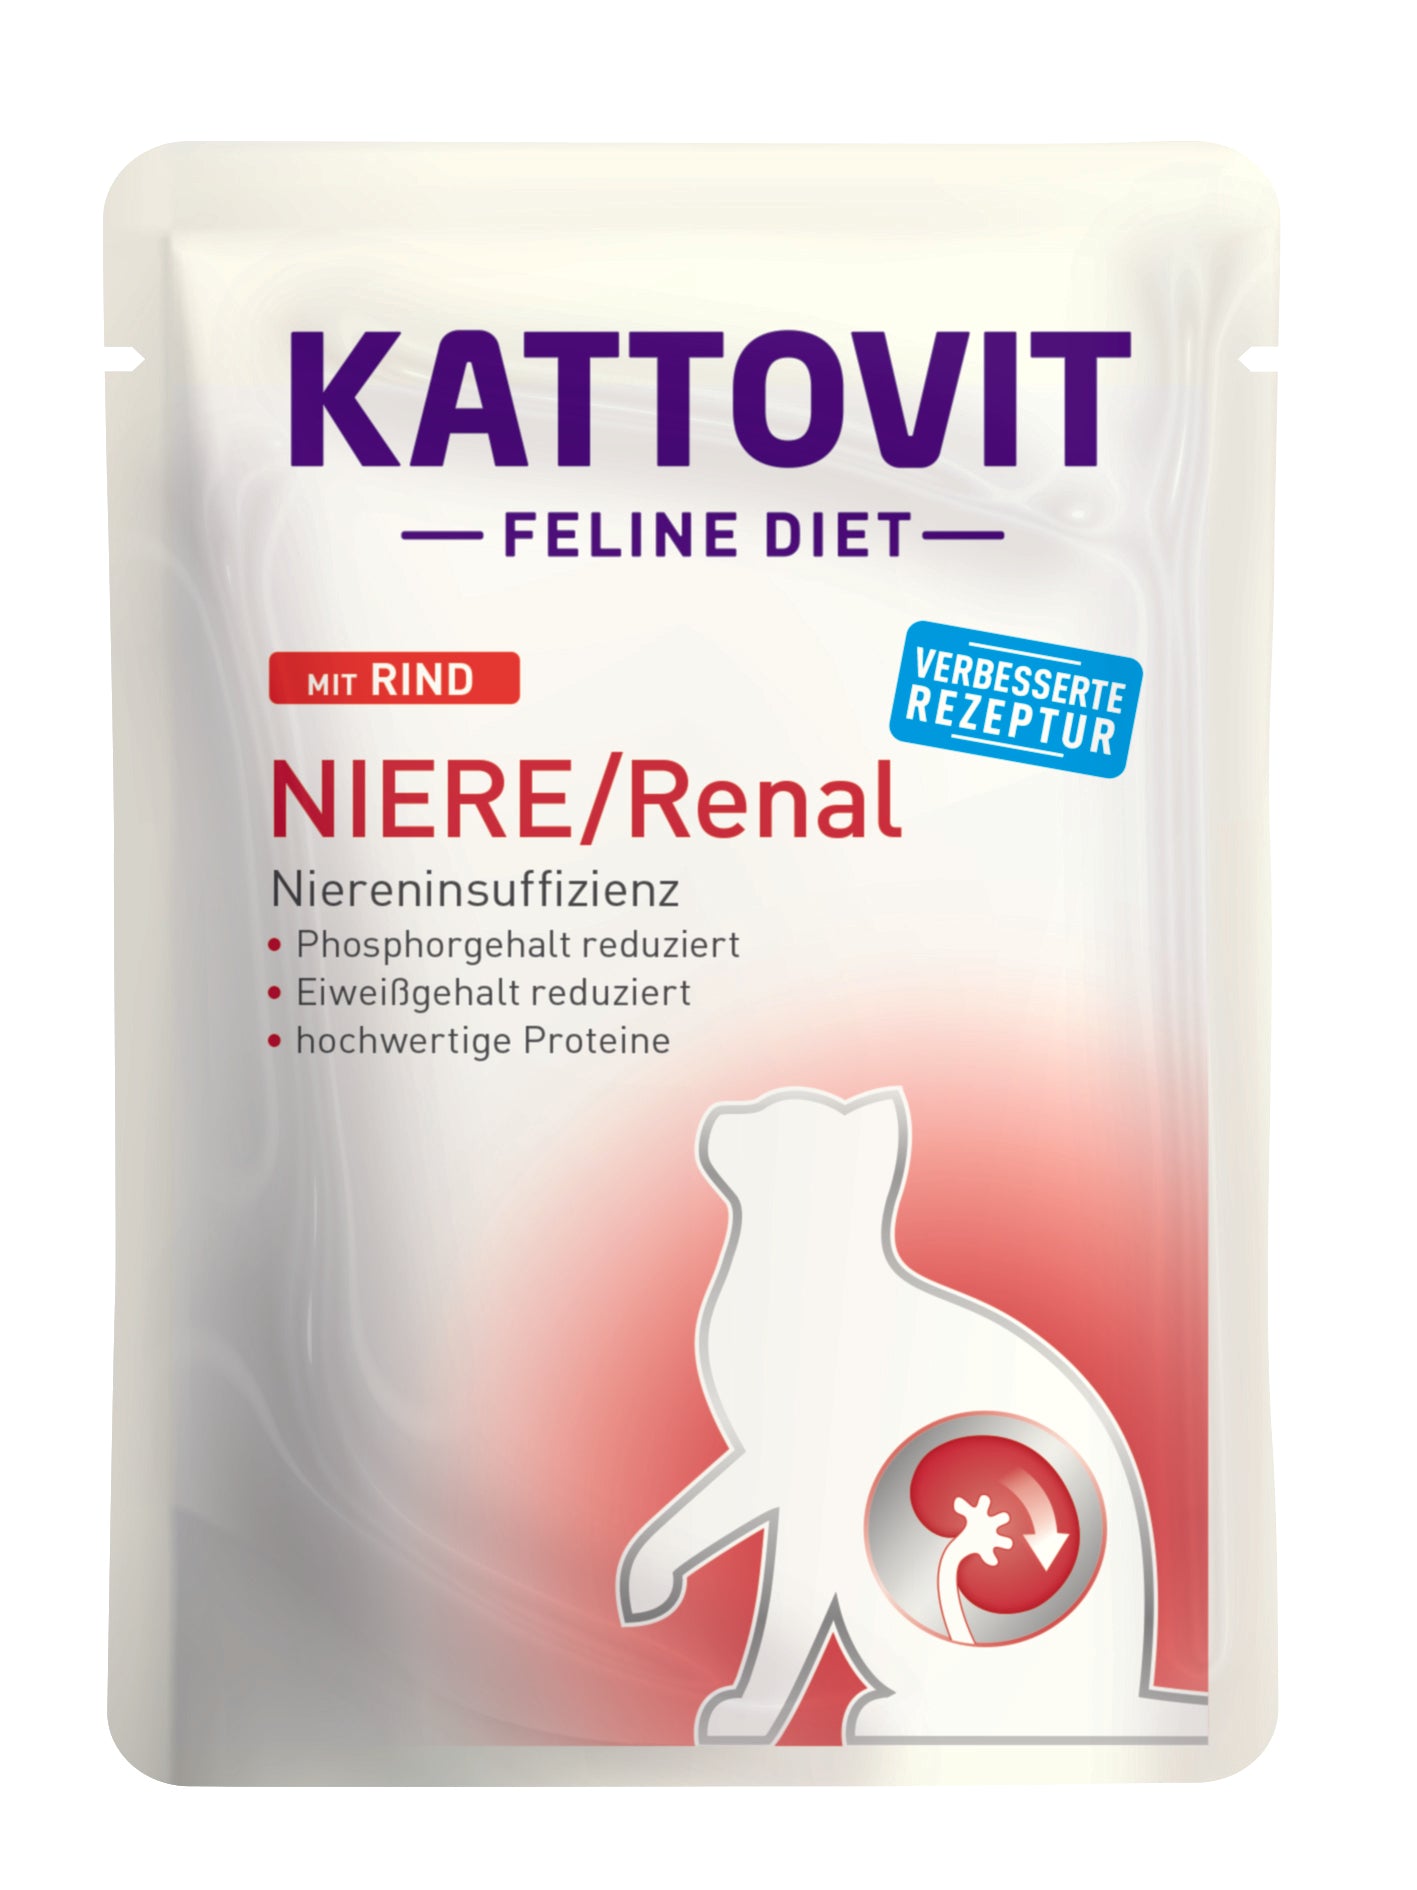 Artikel mit dem Namen Kattovit Feline Diet Niere/Renal im Shop von zoo.de , dem Onlineshop für nachhaltiges Hundefutter und Katzenfutter.